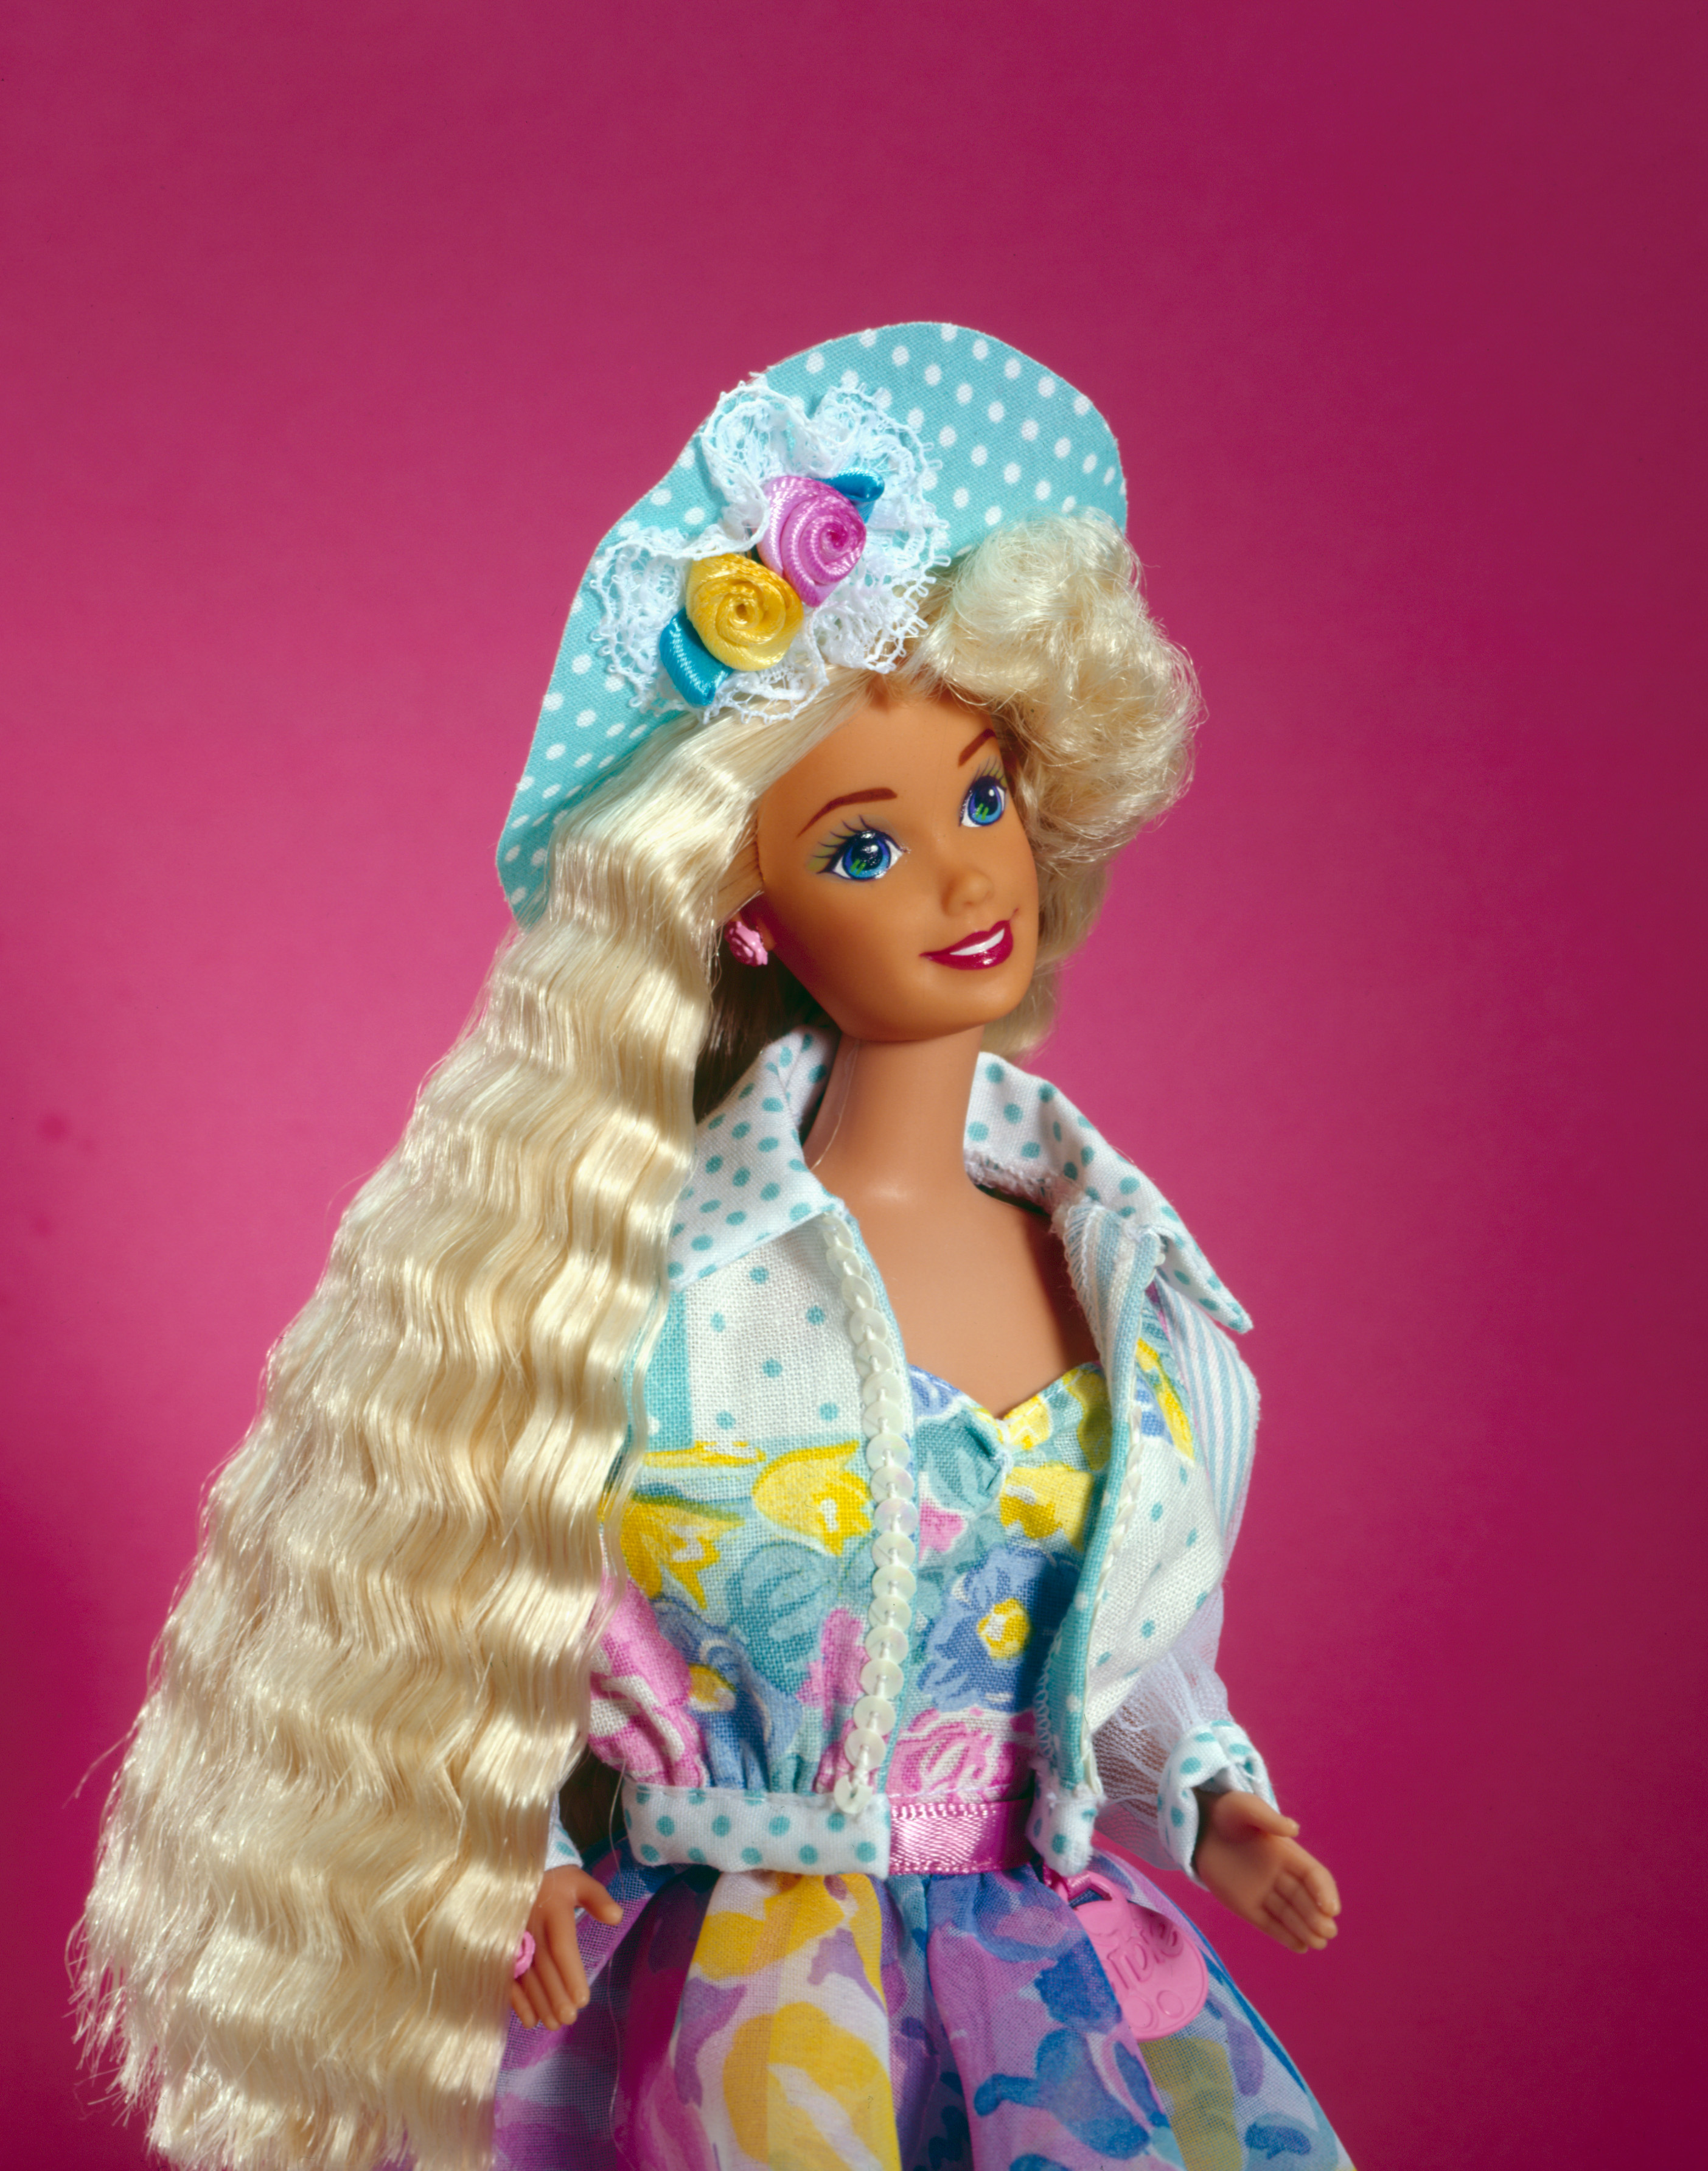 Mattel 1963 Allan (barbie) Doll